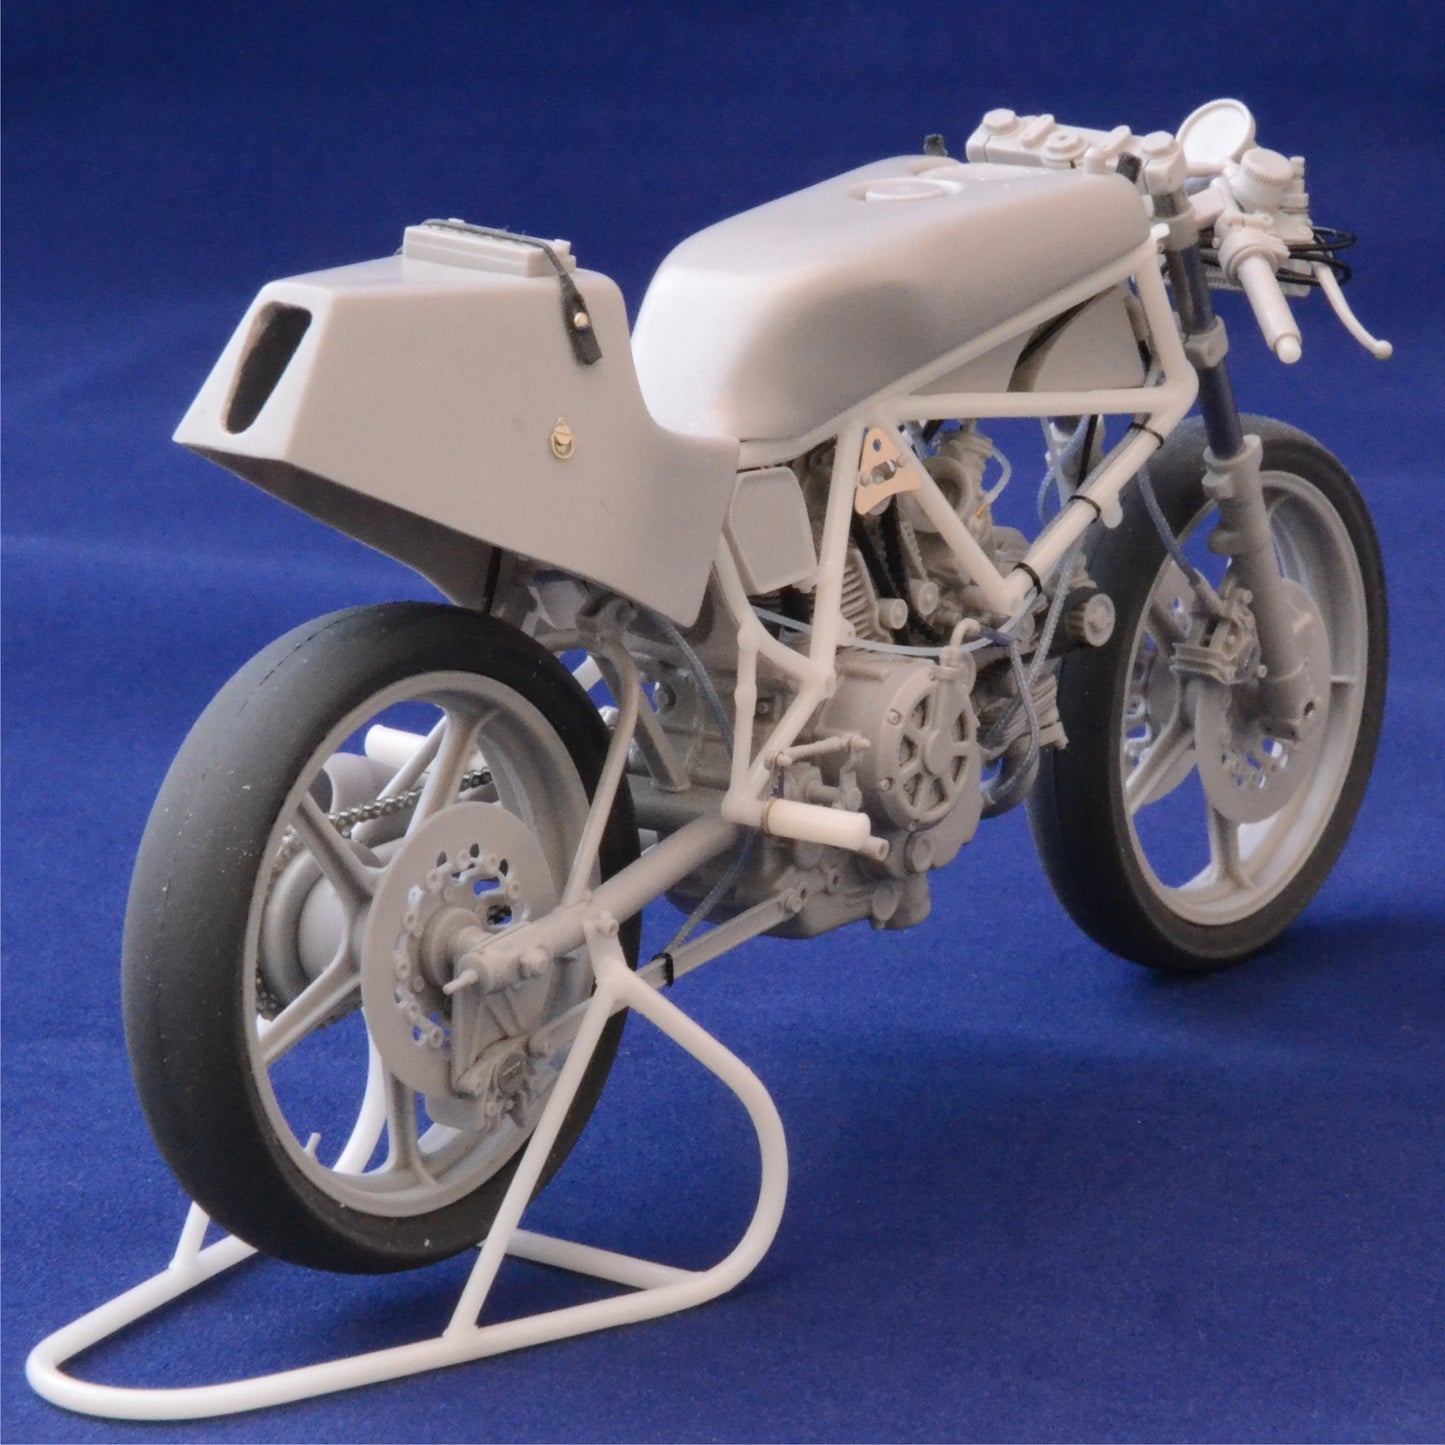 BRACH MODEL - BM-VR 07 Ducati TT2 1982 LIMITED EDITION